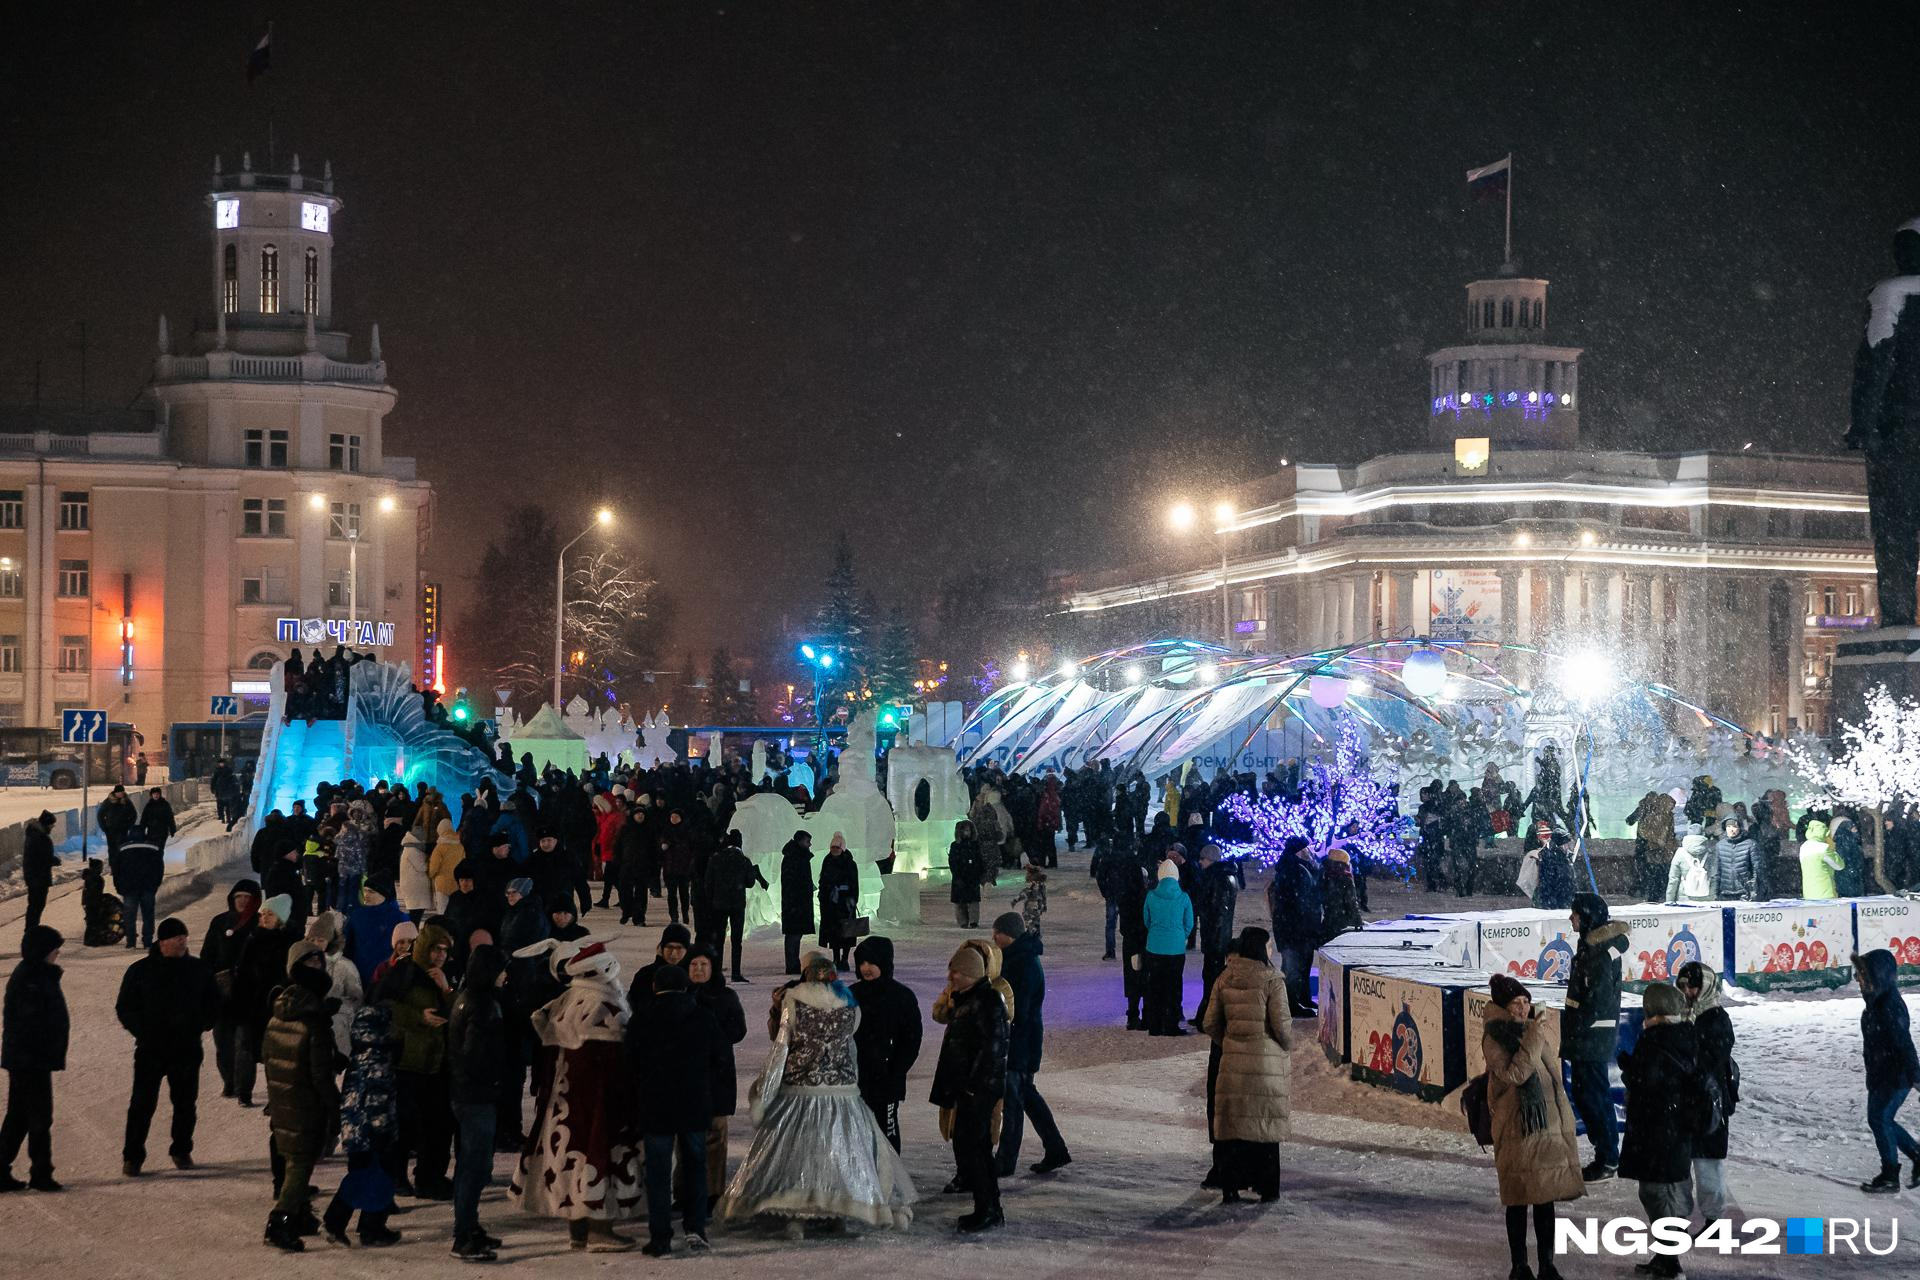 Где в Кемерове пройдут представления и новогодние программы. Публикуем праздничную афишу